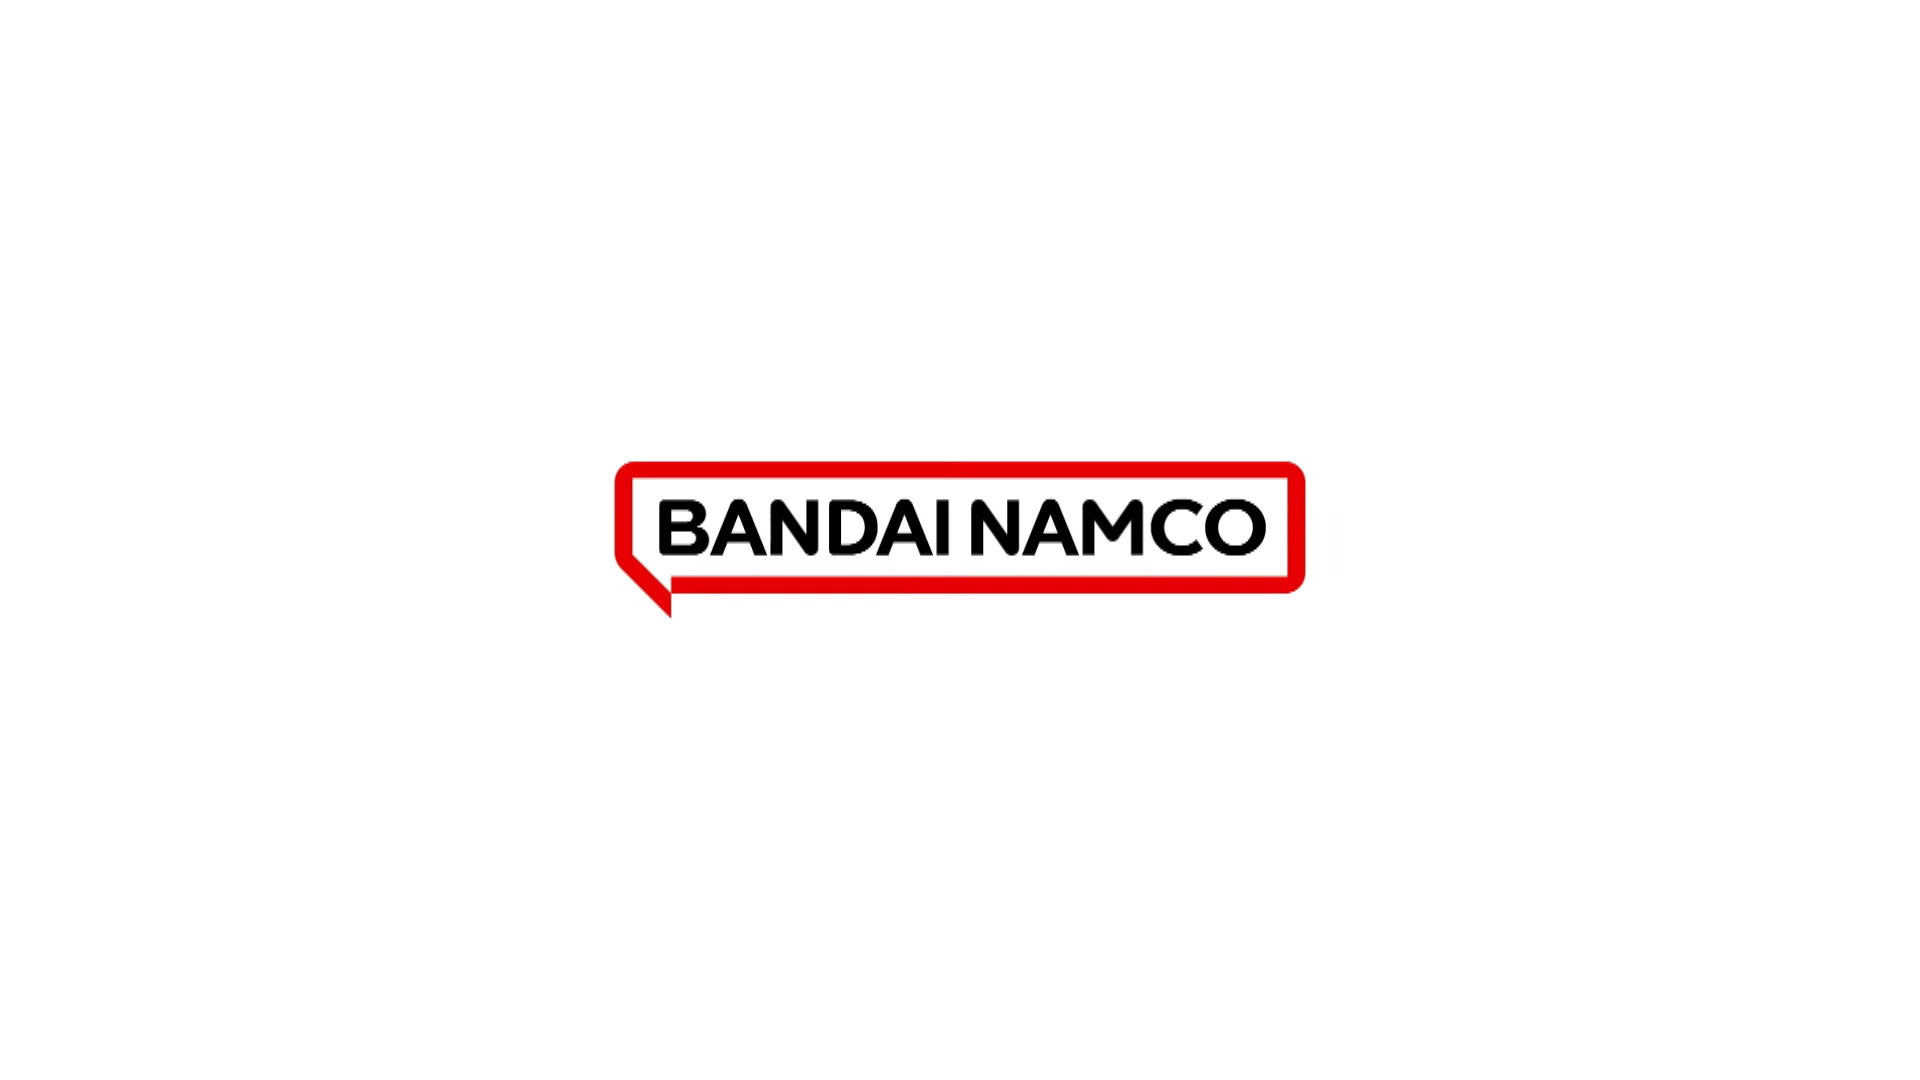 #Bandai Namco eröffnet in der kommenden Woche weitere Stores außerhalb Japans